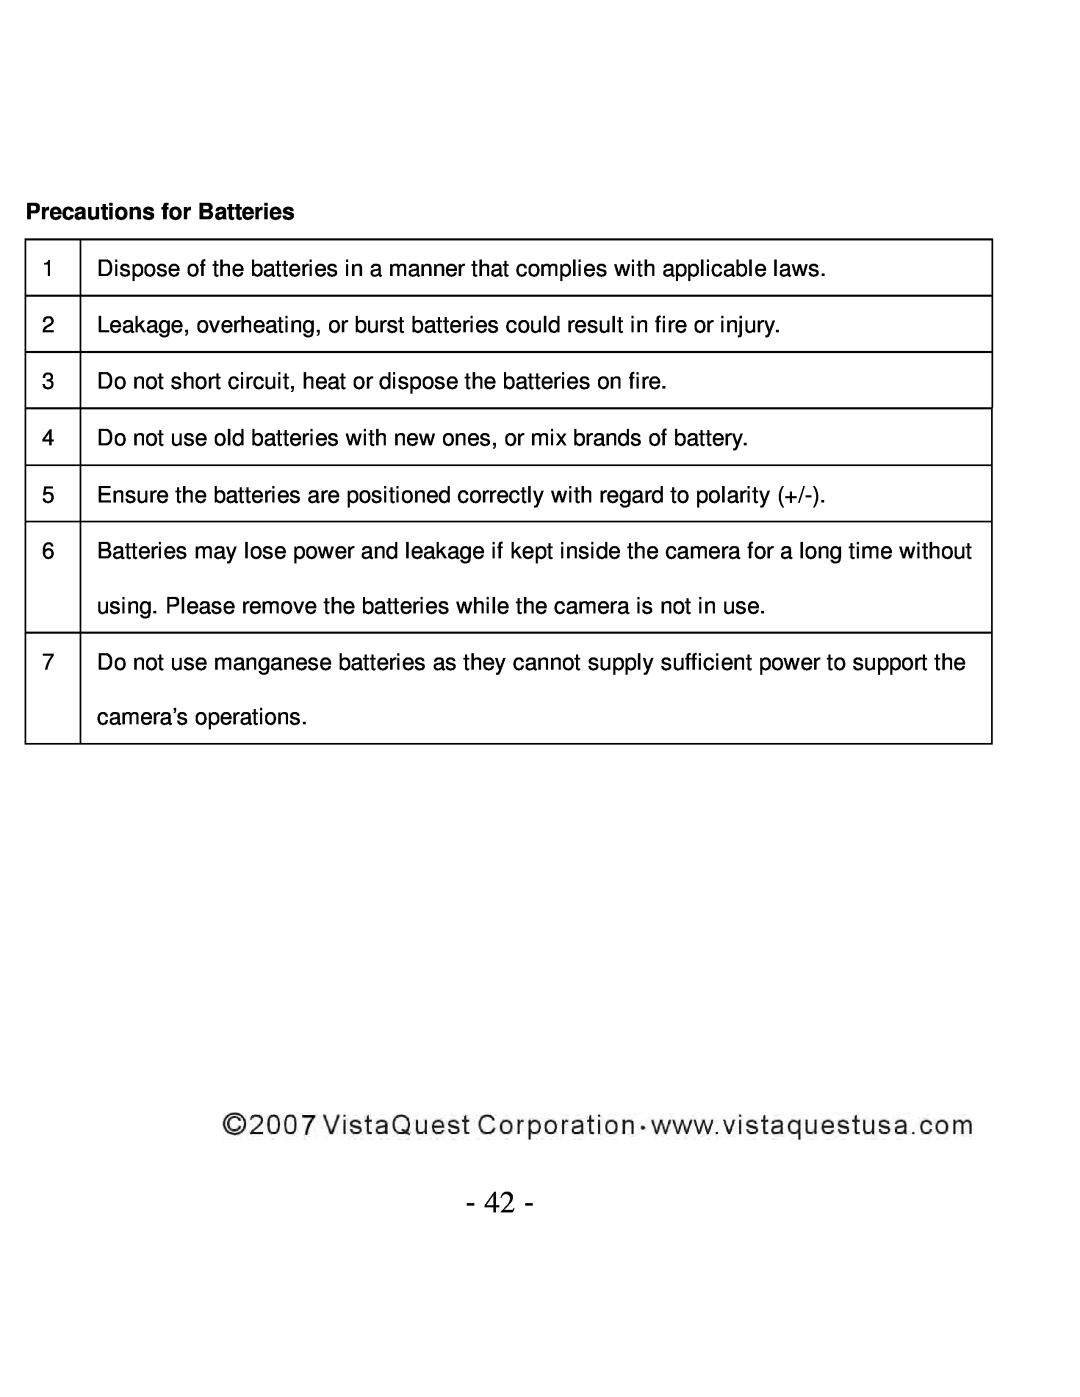 VistaQuest VQ5015 user manual Precautions for Batteries 